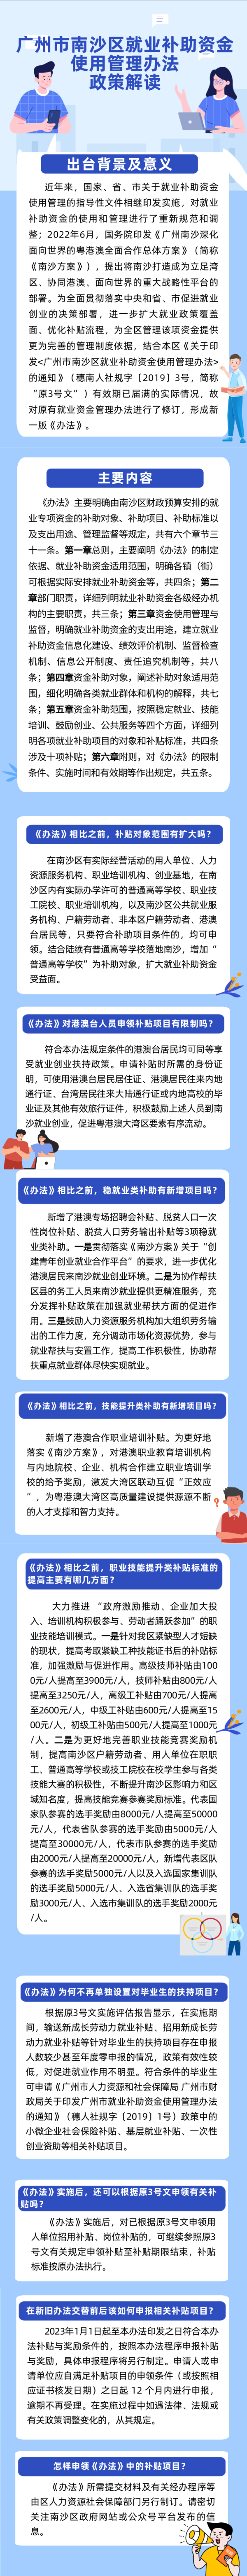 一图读懂关于《广州市南沙区就业补助资金使用管理办法》的政策解读.jpg